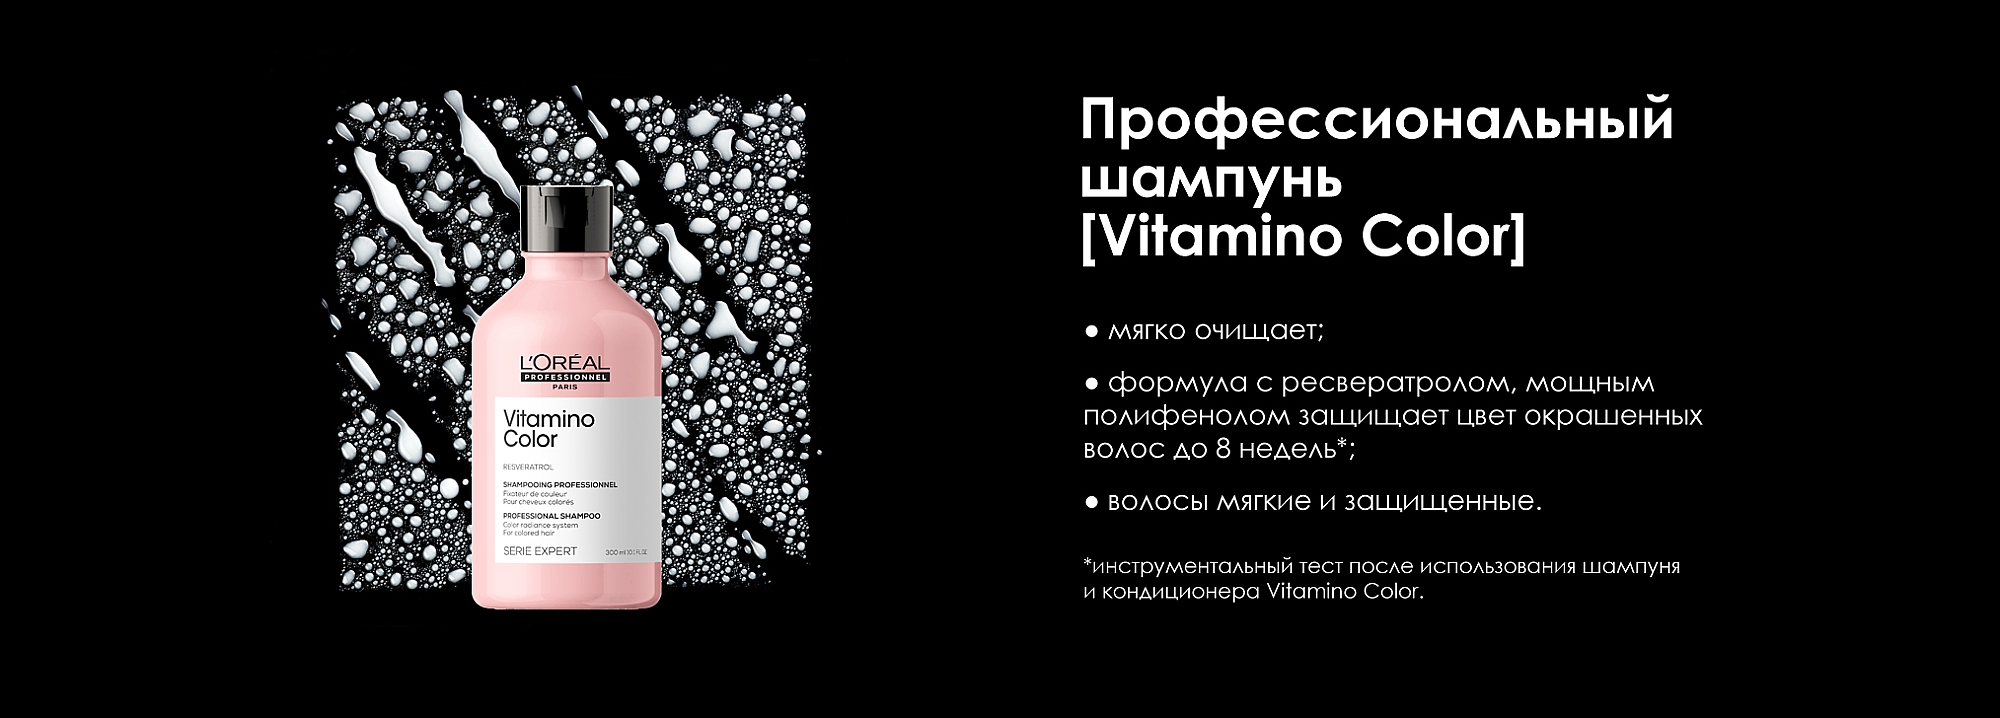 L'Oreal Professionnel Serie Expert Vitamino Color Resveratrol Shampoo